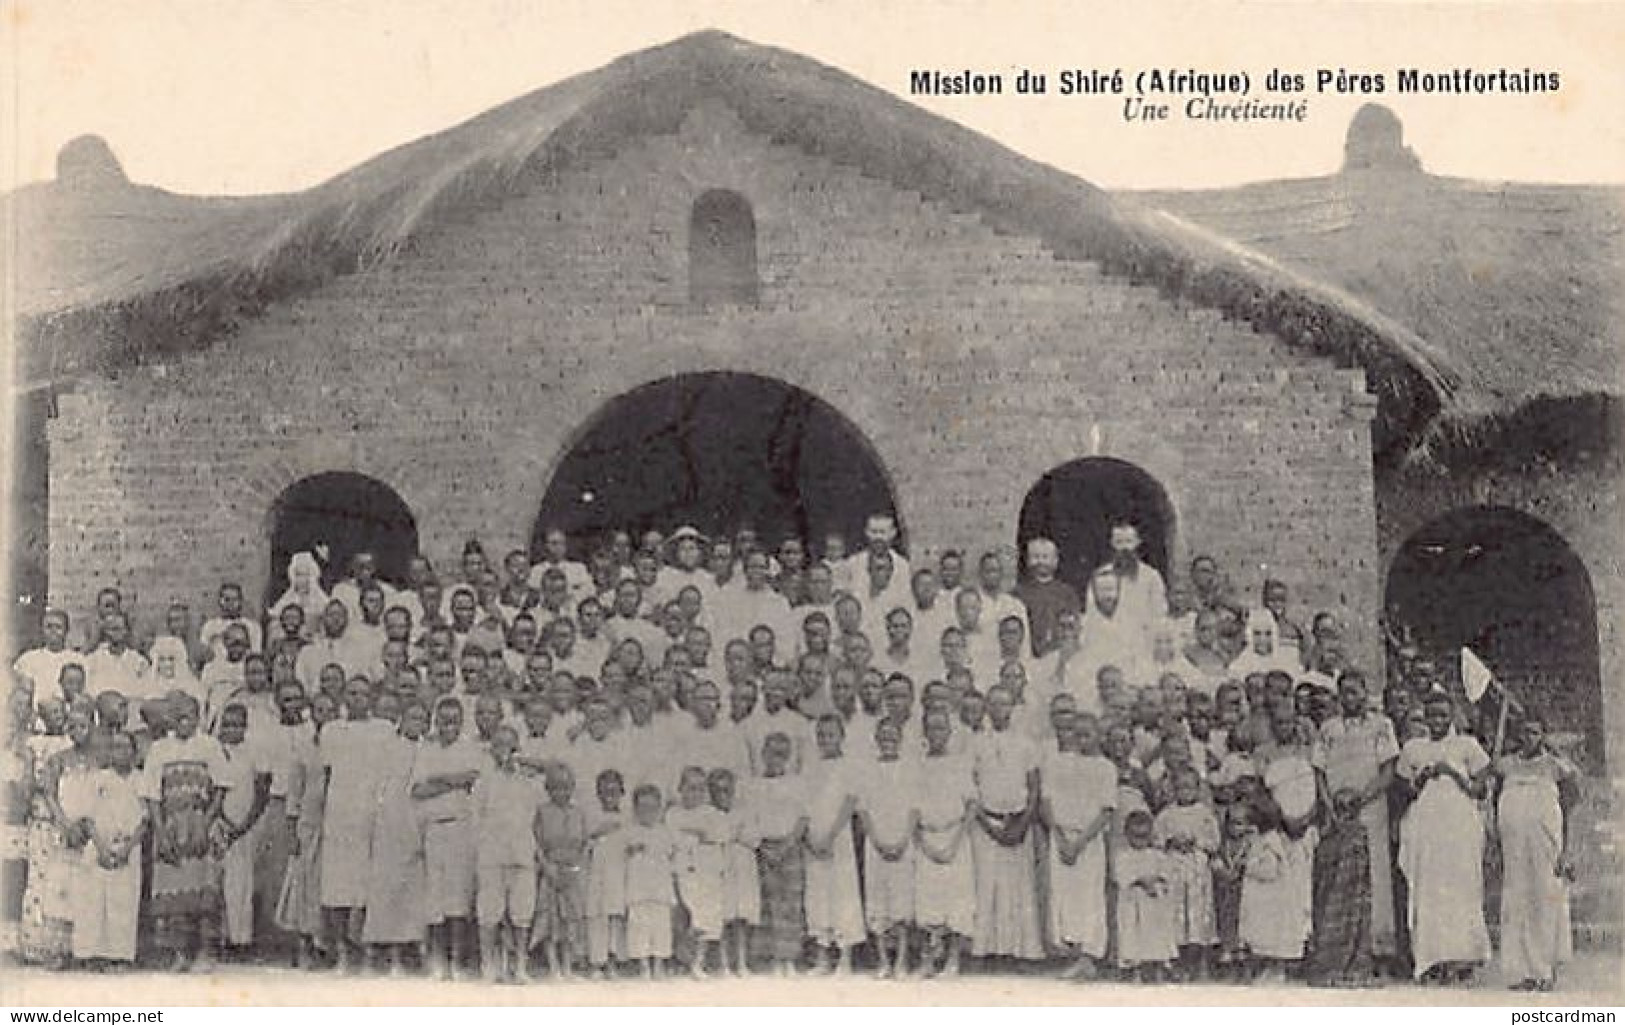 Malawi - A Christian Parish - Publ. Company Of Mary - Mission Du Shiré Des Pères Montfortains - Malawi